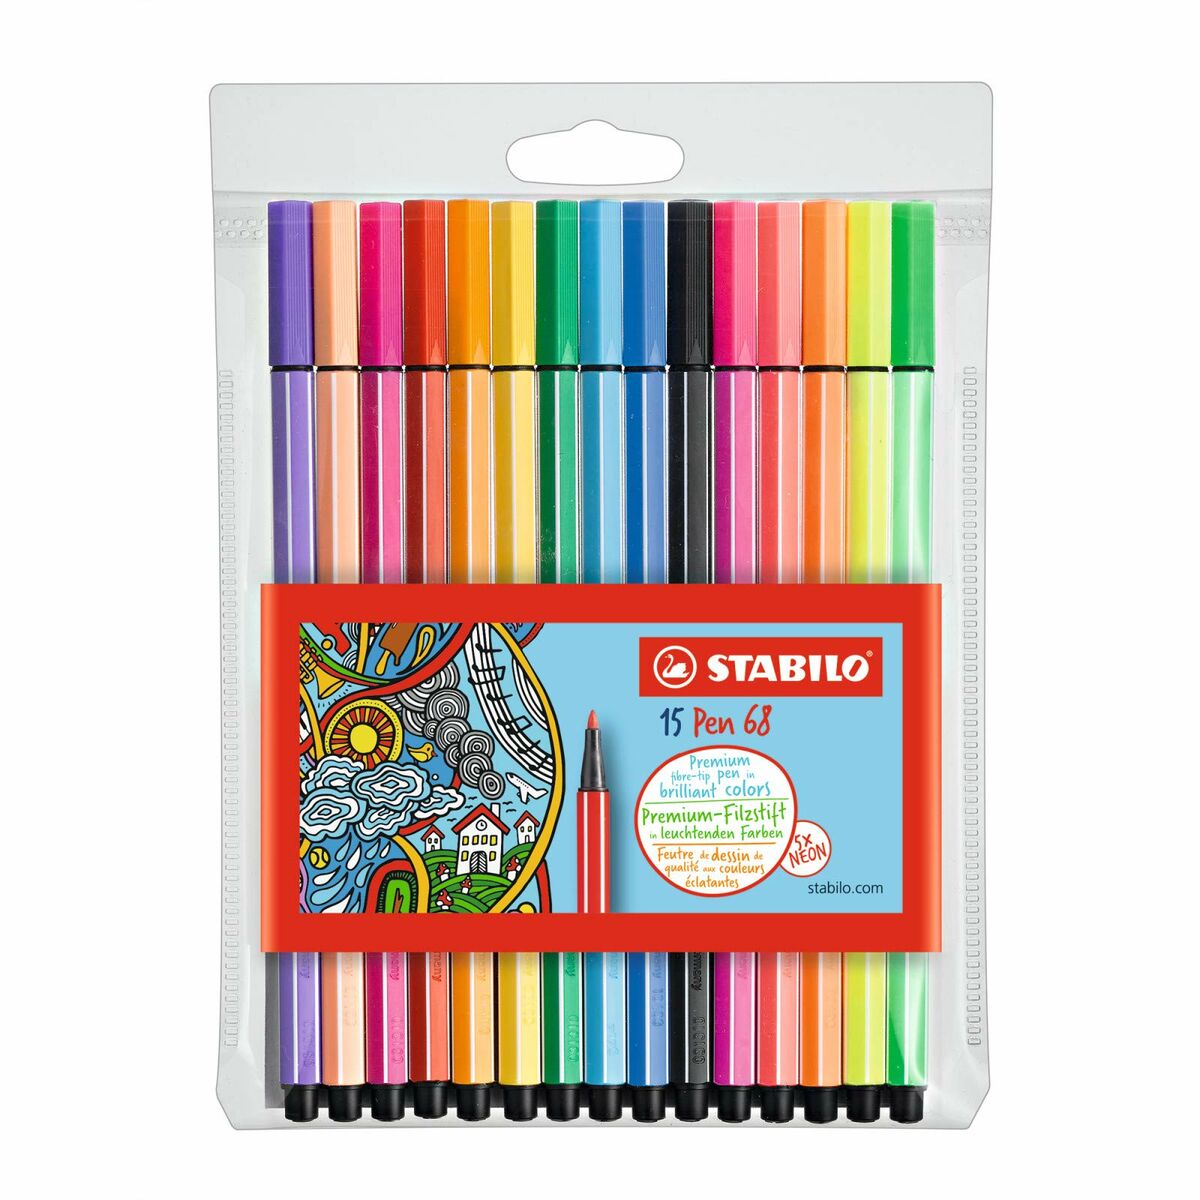 Zestaw markerów Stabilo Pen 68 Standard + Neon Wielokolorowy 15 Części